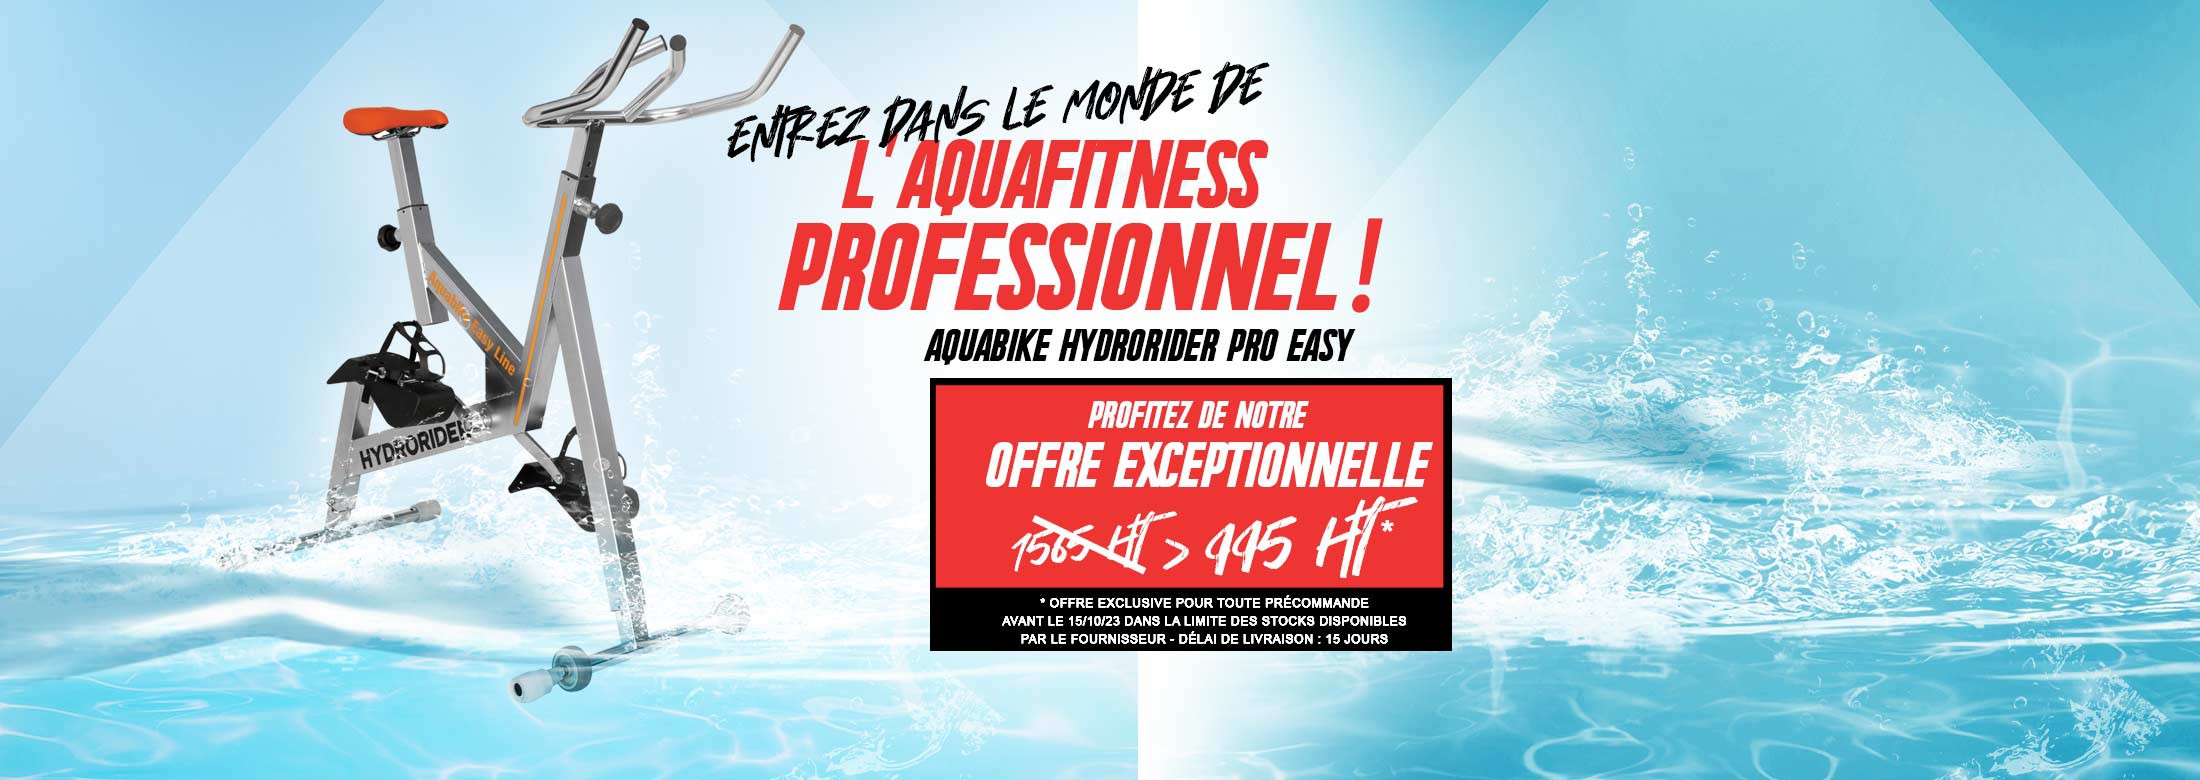 Avec l’aquabike Hydrorider Pro Easy, vous entrez dans le monde de l’aquafitness professionnel ! 